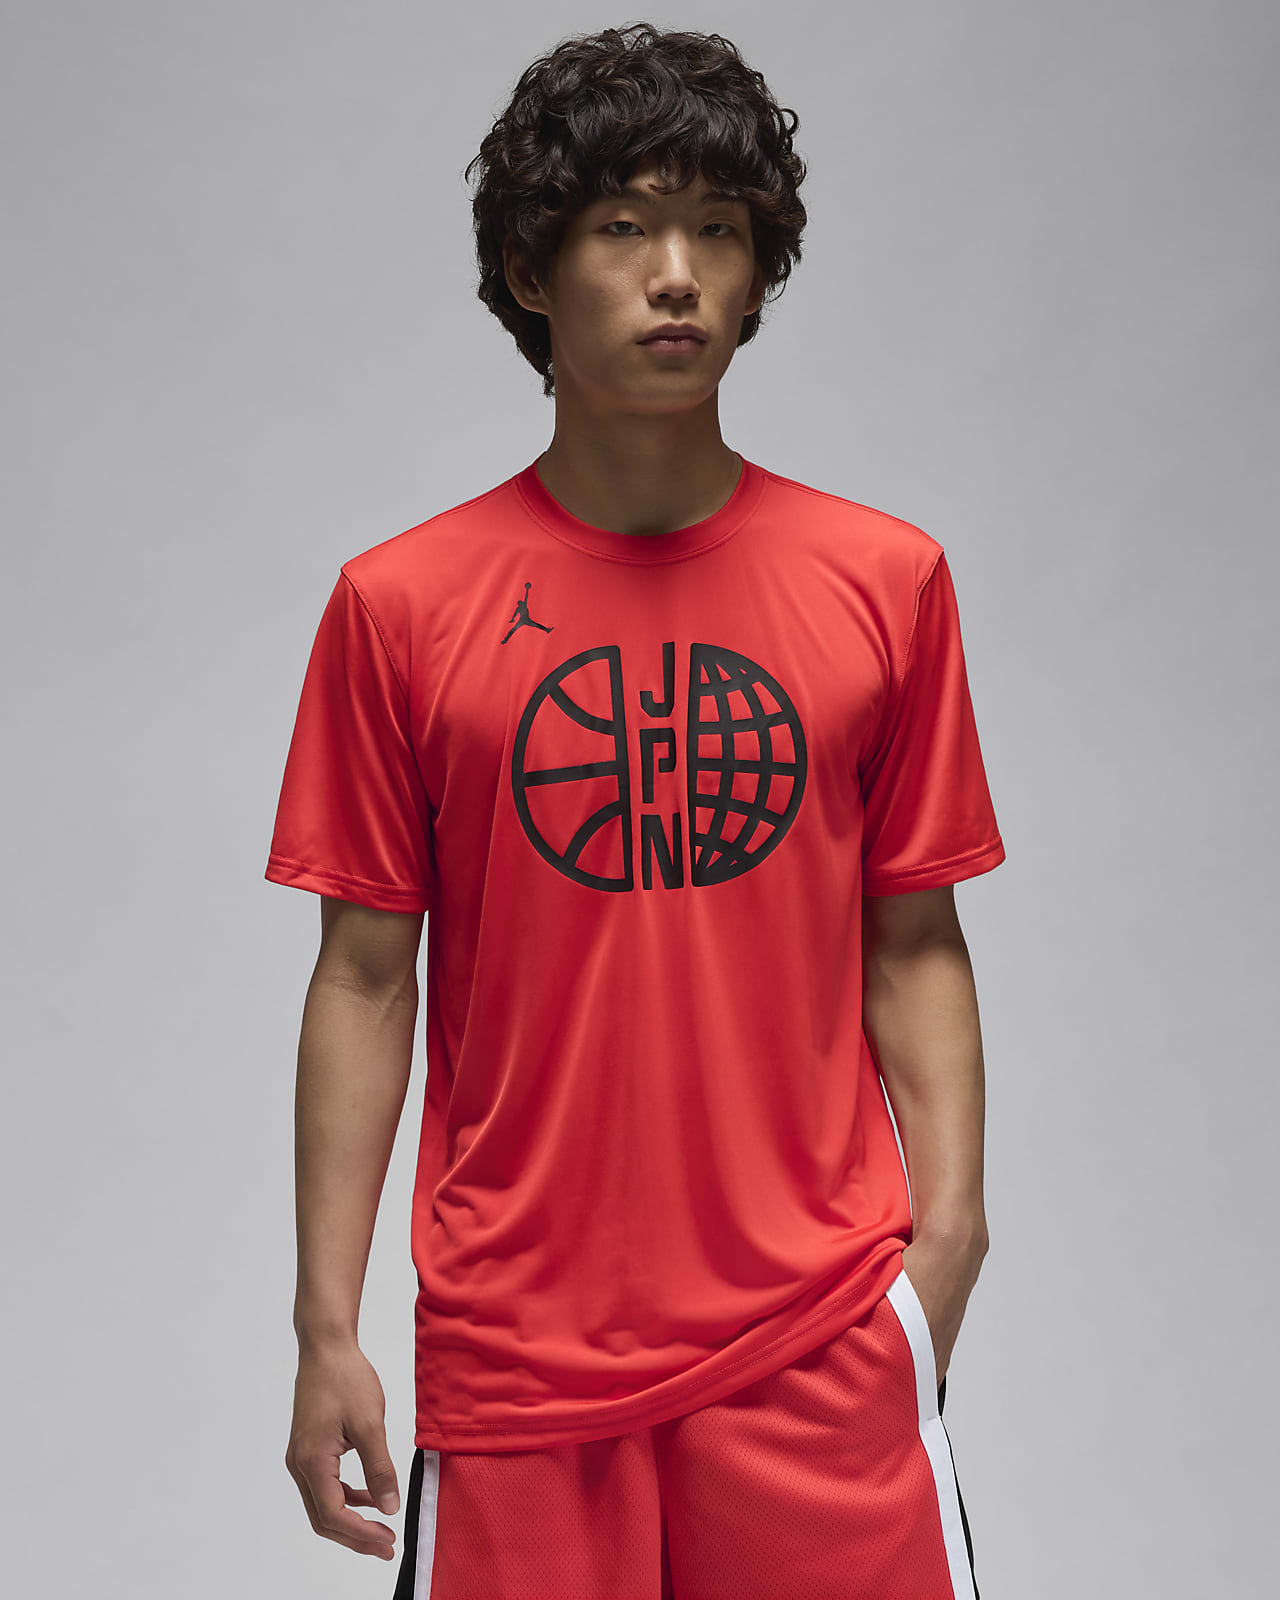 日本 プラクティス メンズ ジョーダン バスケットボール Tシャツ